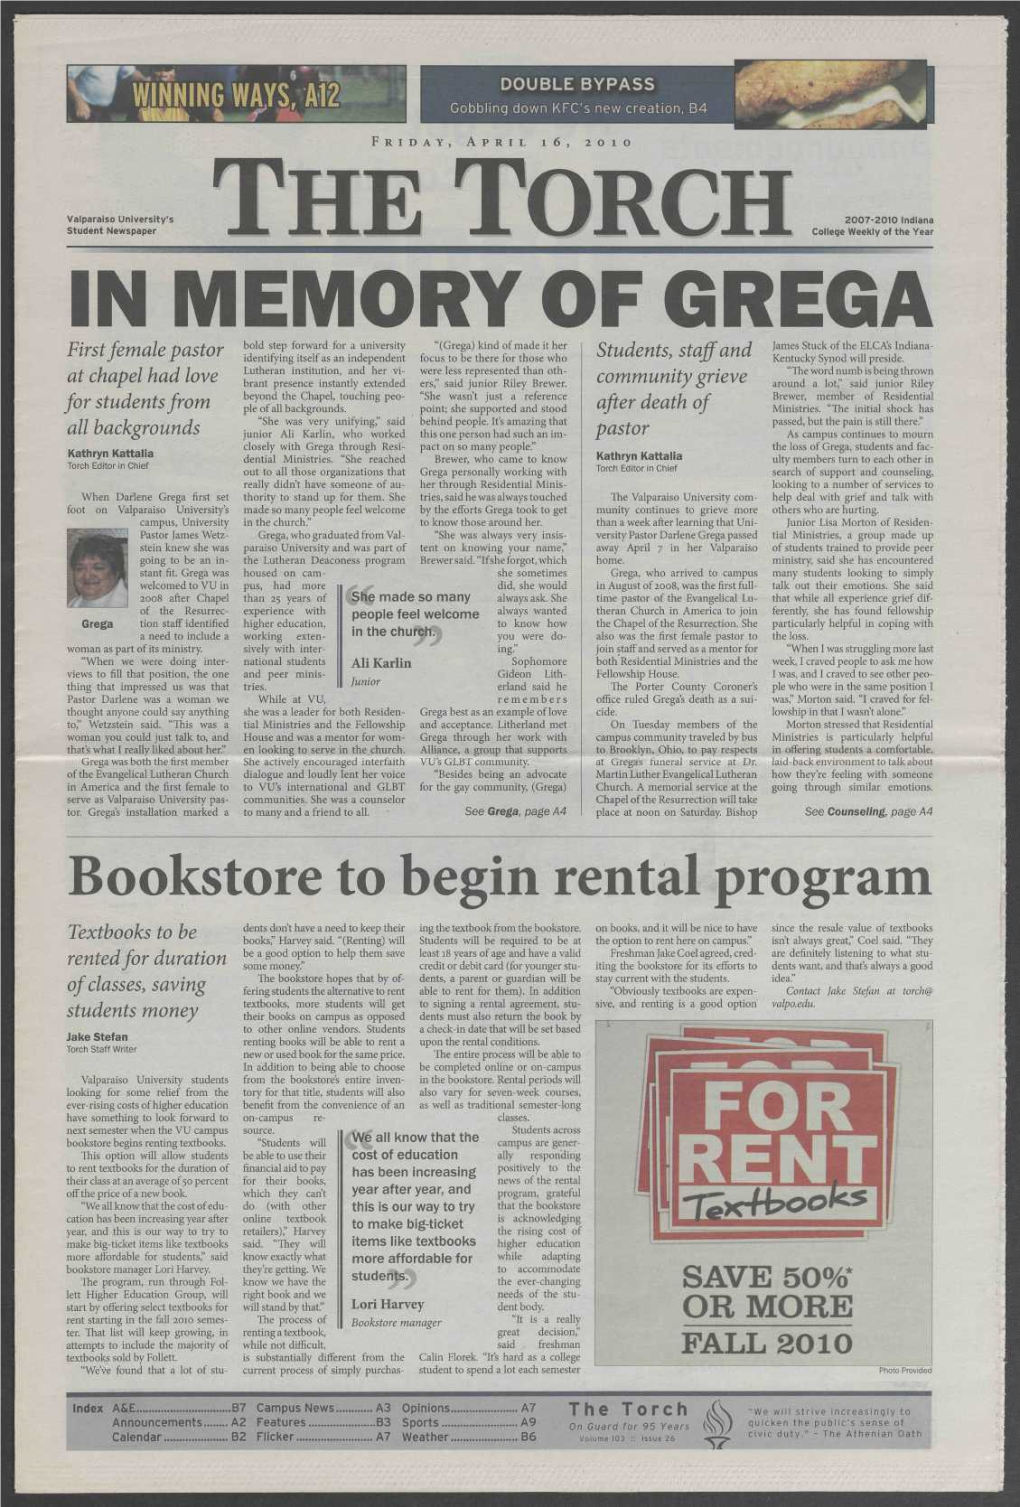 In Memory of Grega